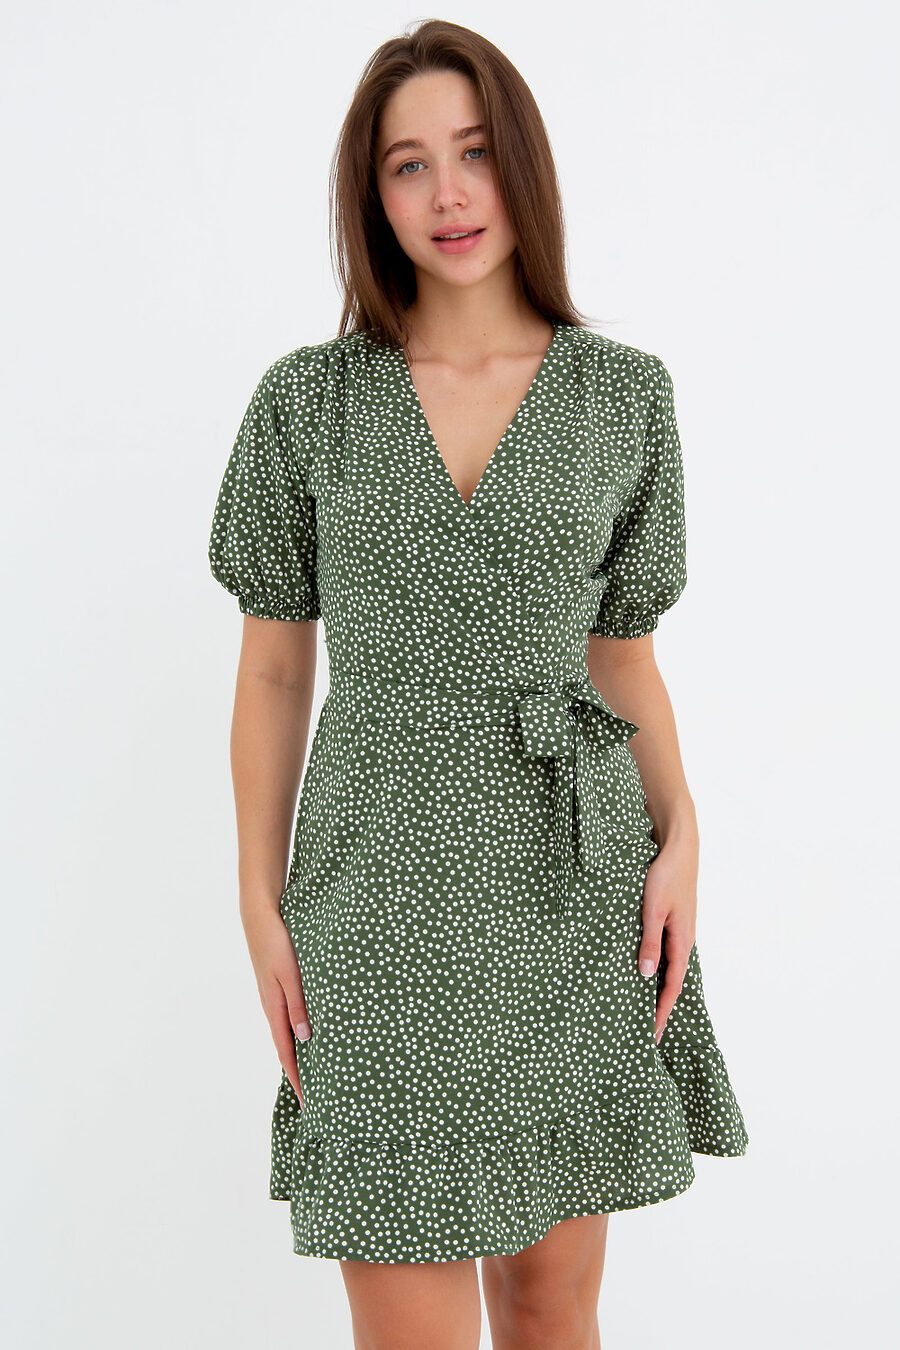 Платье П-20 для женщин НАТАЛИ 775899 купить оптом от производителя. Совместная покупка женской одежды в OptMoyo